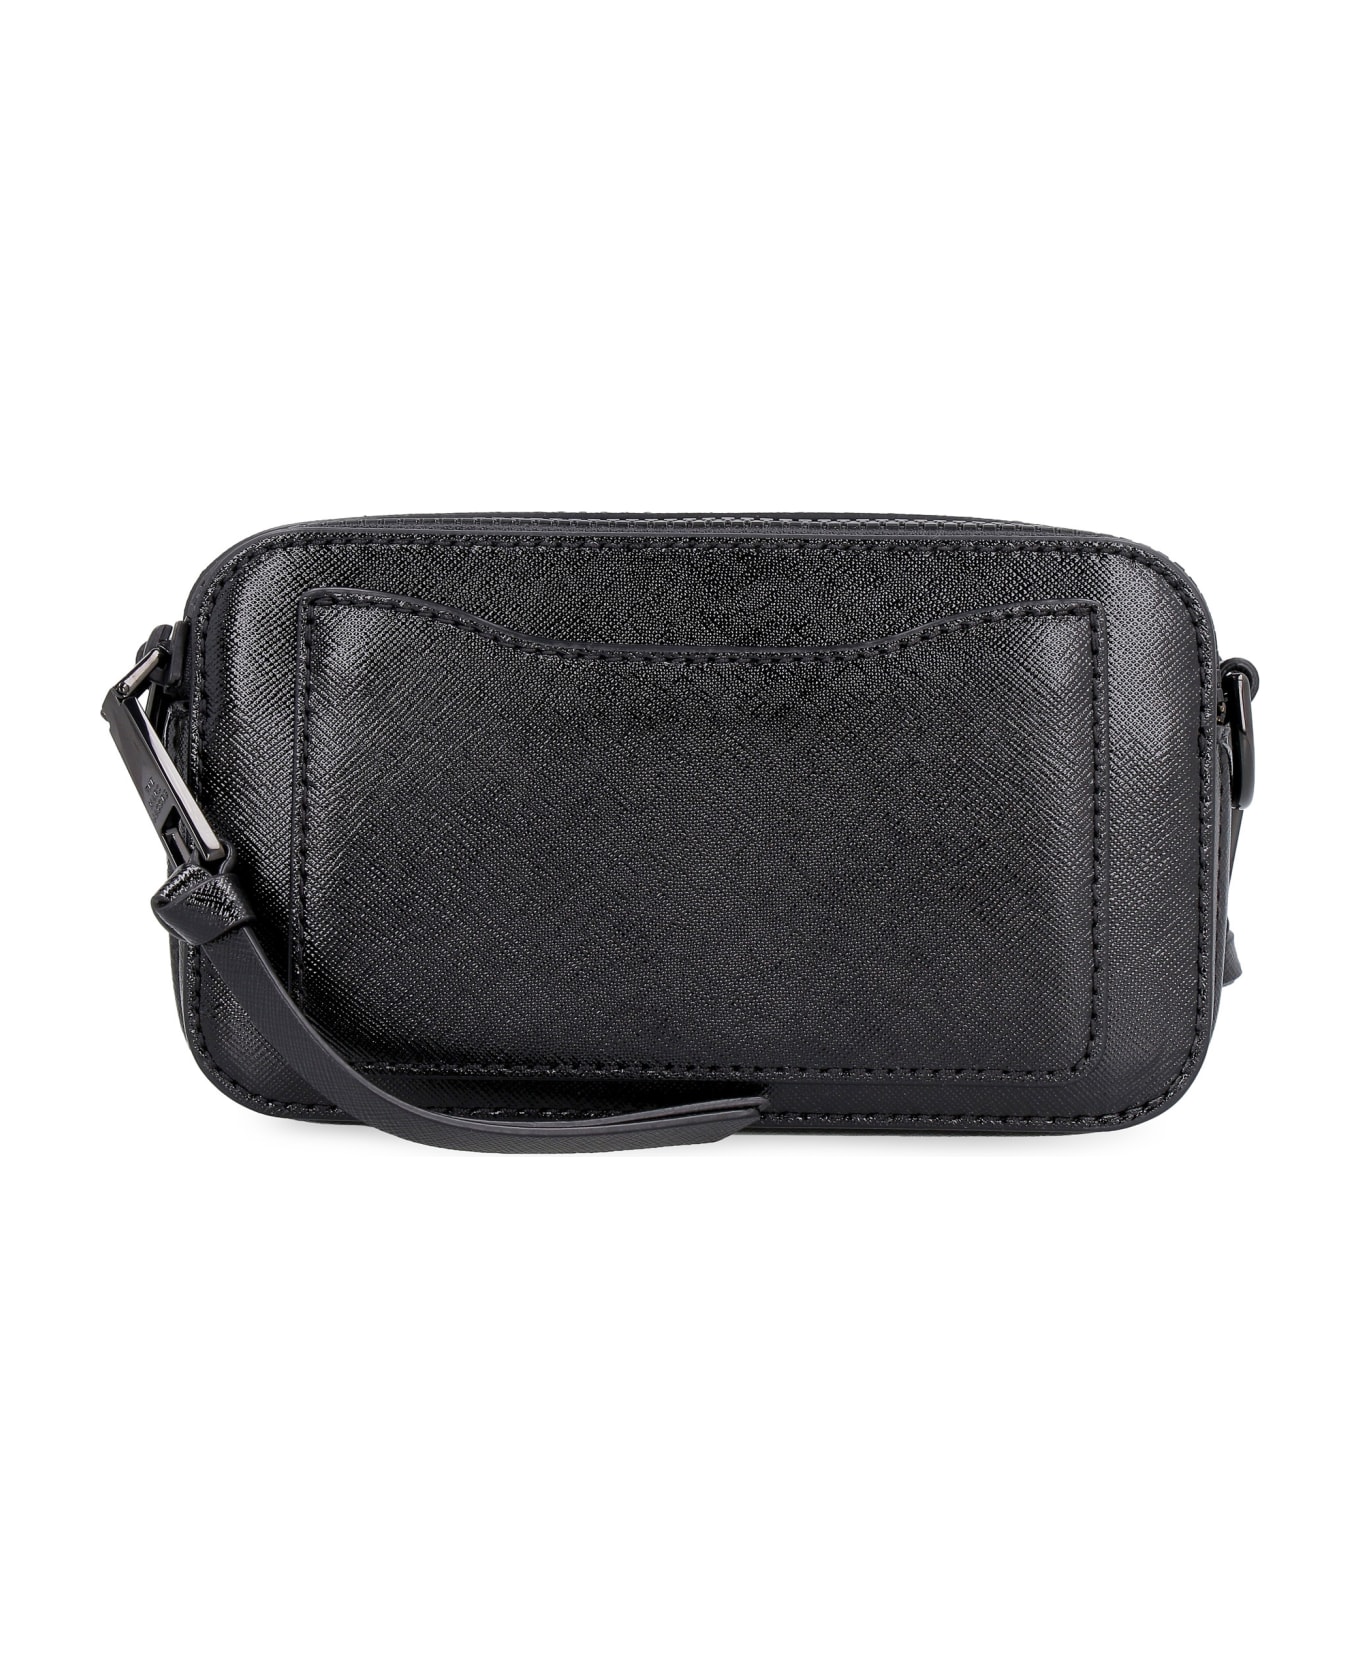 Marc Jacobs The Snapshot Leather Shoulder Bag - Black